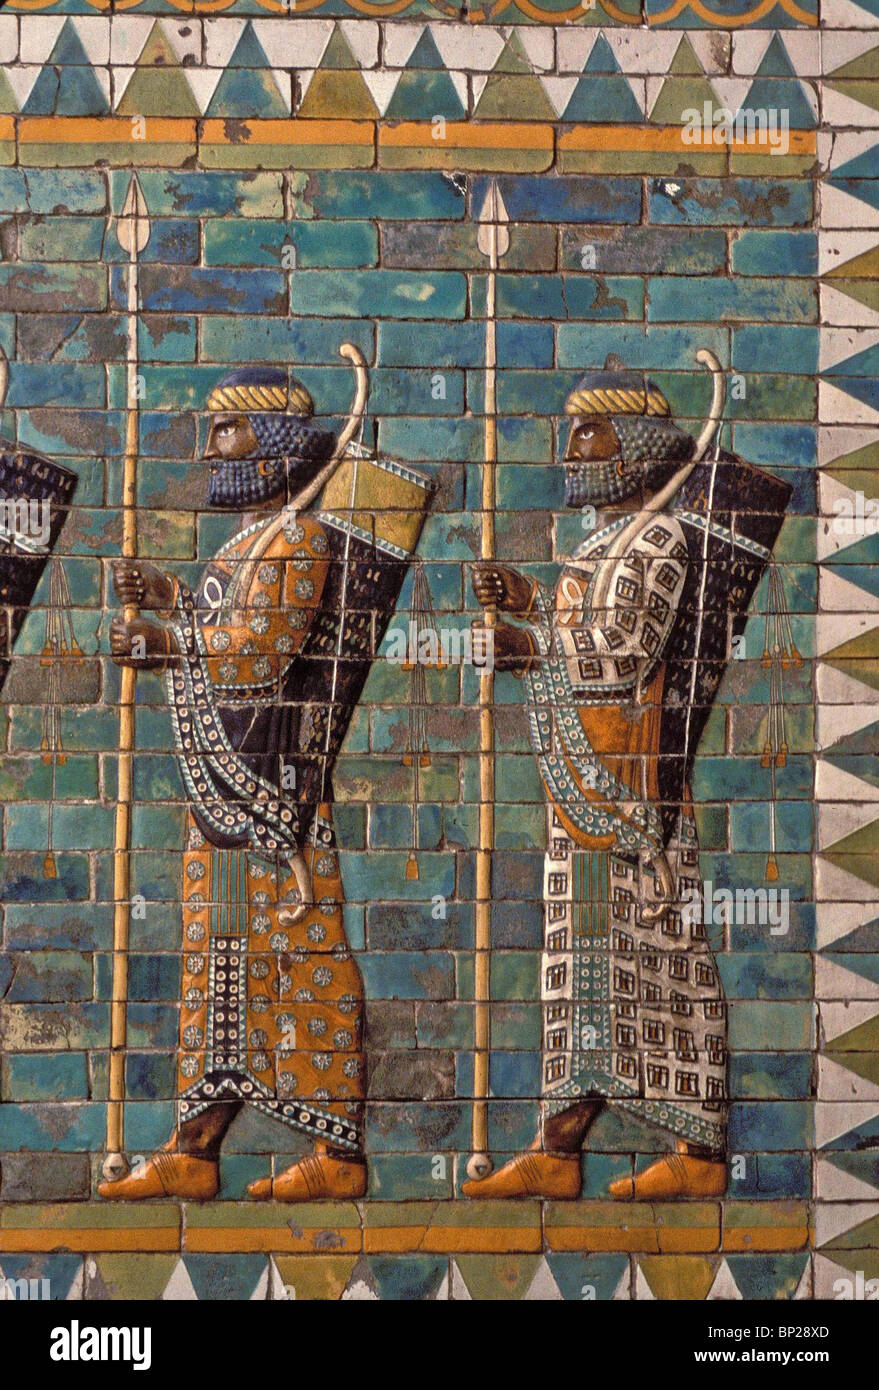 Protezione ELAMITE dell'esercito persiano rappresentato in pieno splendore. In mattoni smaltati dal palazzo ACHEMENIDE IN SUSA - PERSIA 6TH.C. Foto Stock